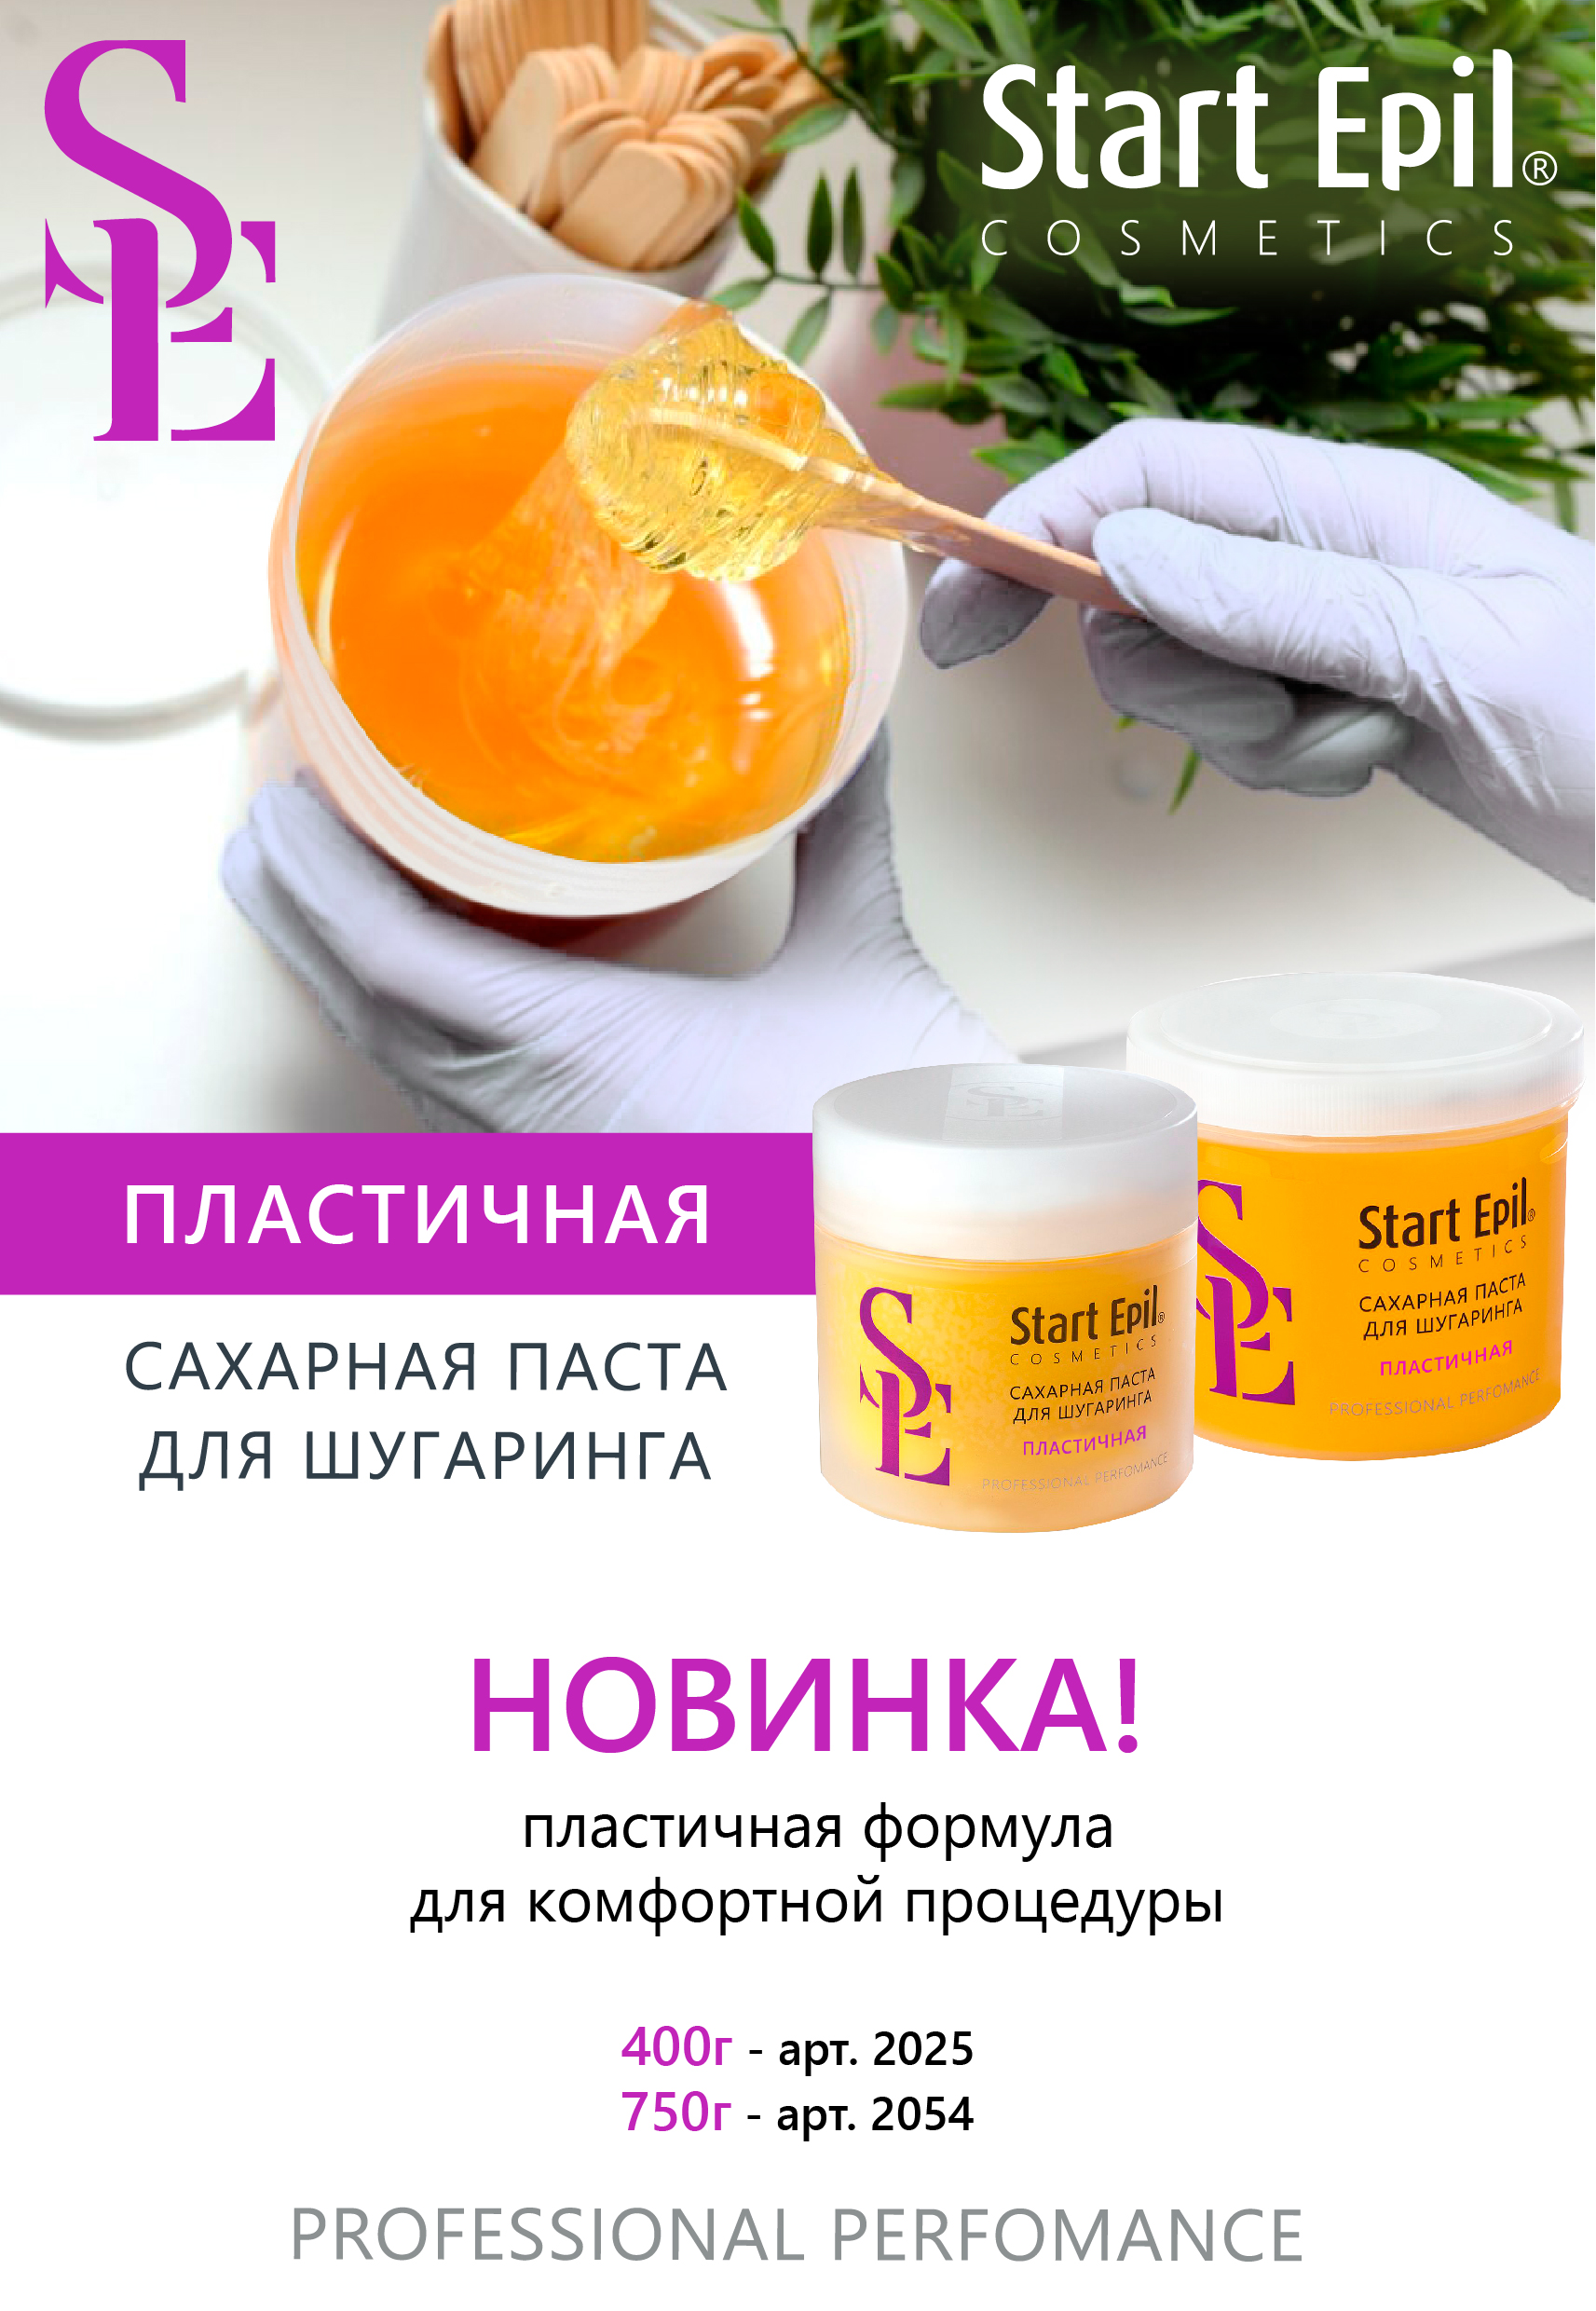 Start Epil Сахарная паста для шугаринга "Пластичная" 750 г.